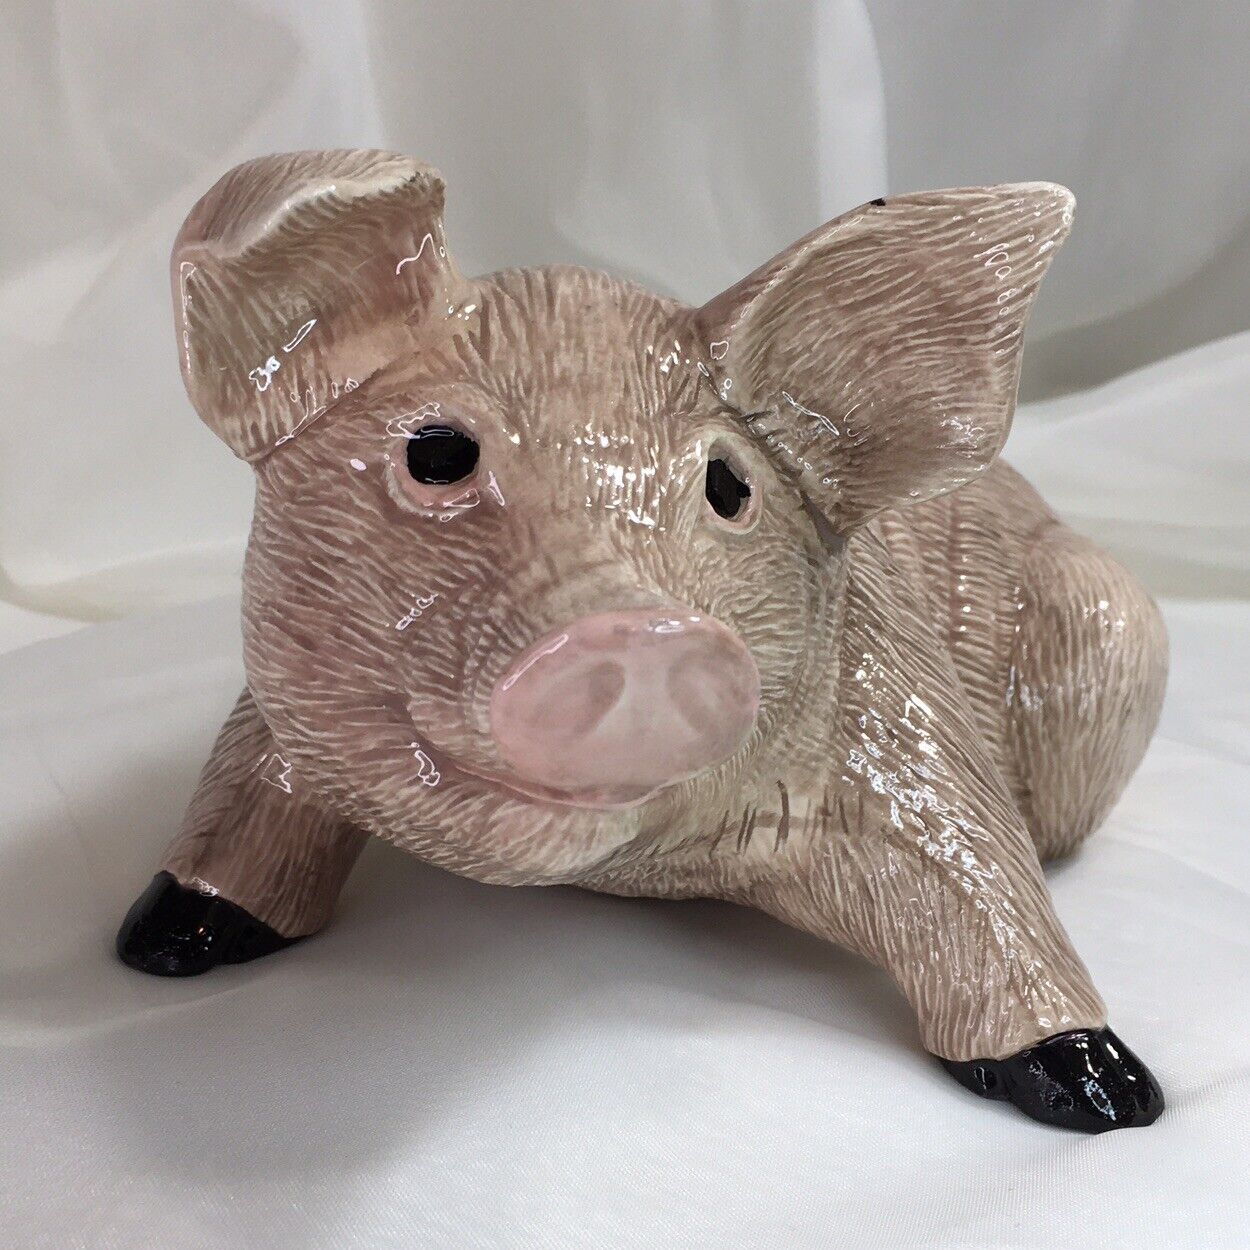 9” Pig, Sow, Happy Hog Figurine, 1989 Vintage Glazed Ceramic, Signed❤️